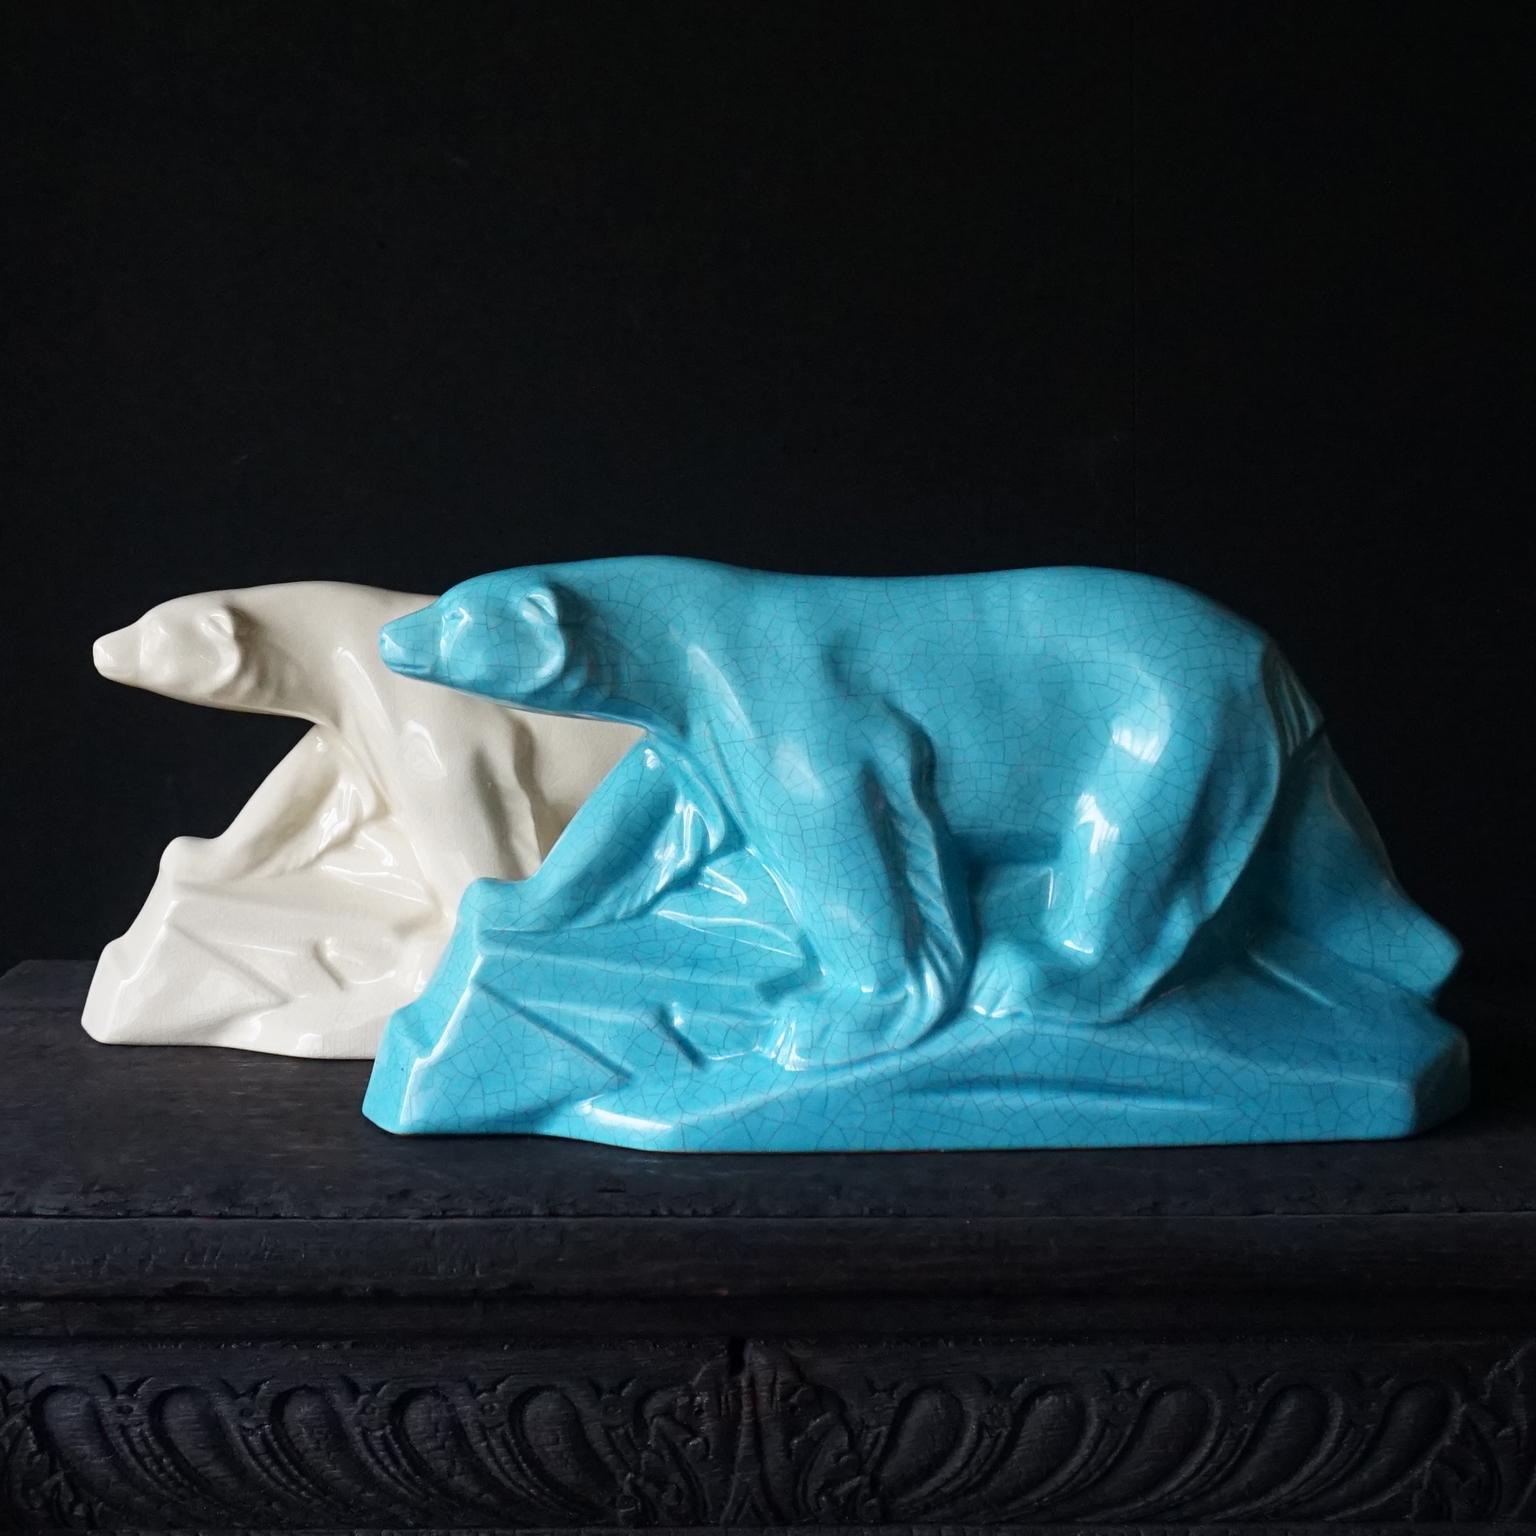 Deux magnifiques ours polaires Art déco en blanc et bleu, tous deux avec glaçure craquelée, de la société française L&V Ceram DAX.
Les deux sont estampillés du logo L et V Ceram (ceram signifie céramique en français) sur le fond et le bleu a